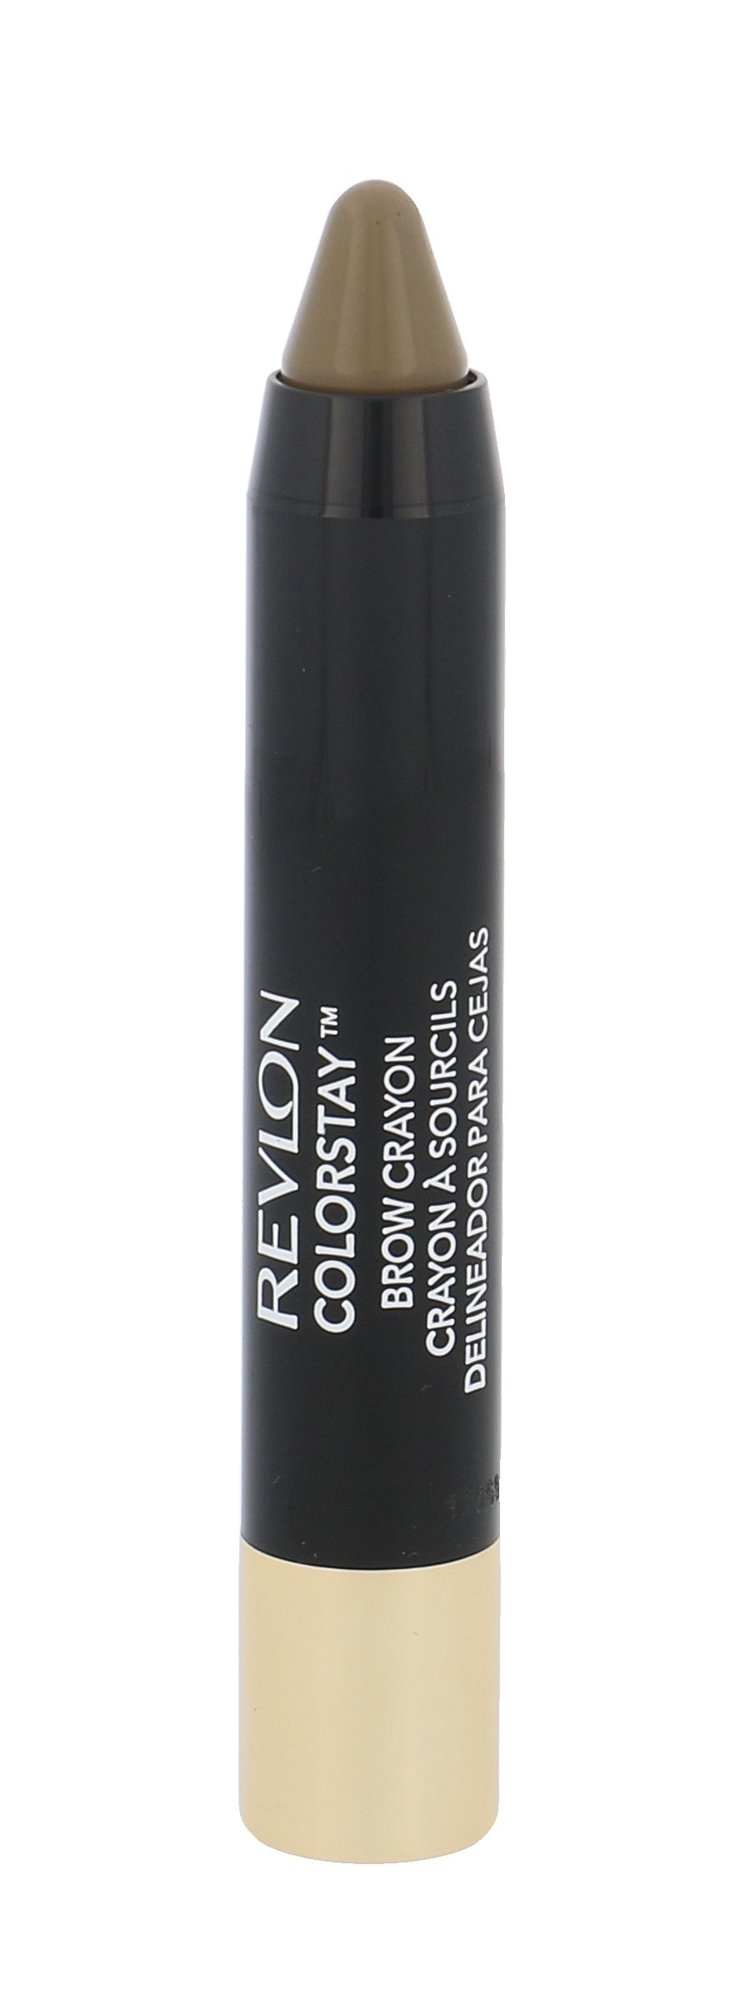 Revlon Colorstay Brow Crayon 305 Blond Eyebrow Pencil